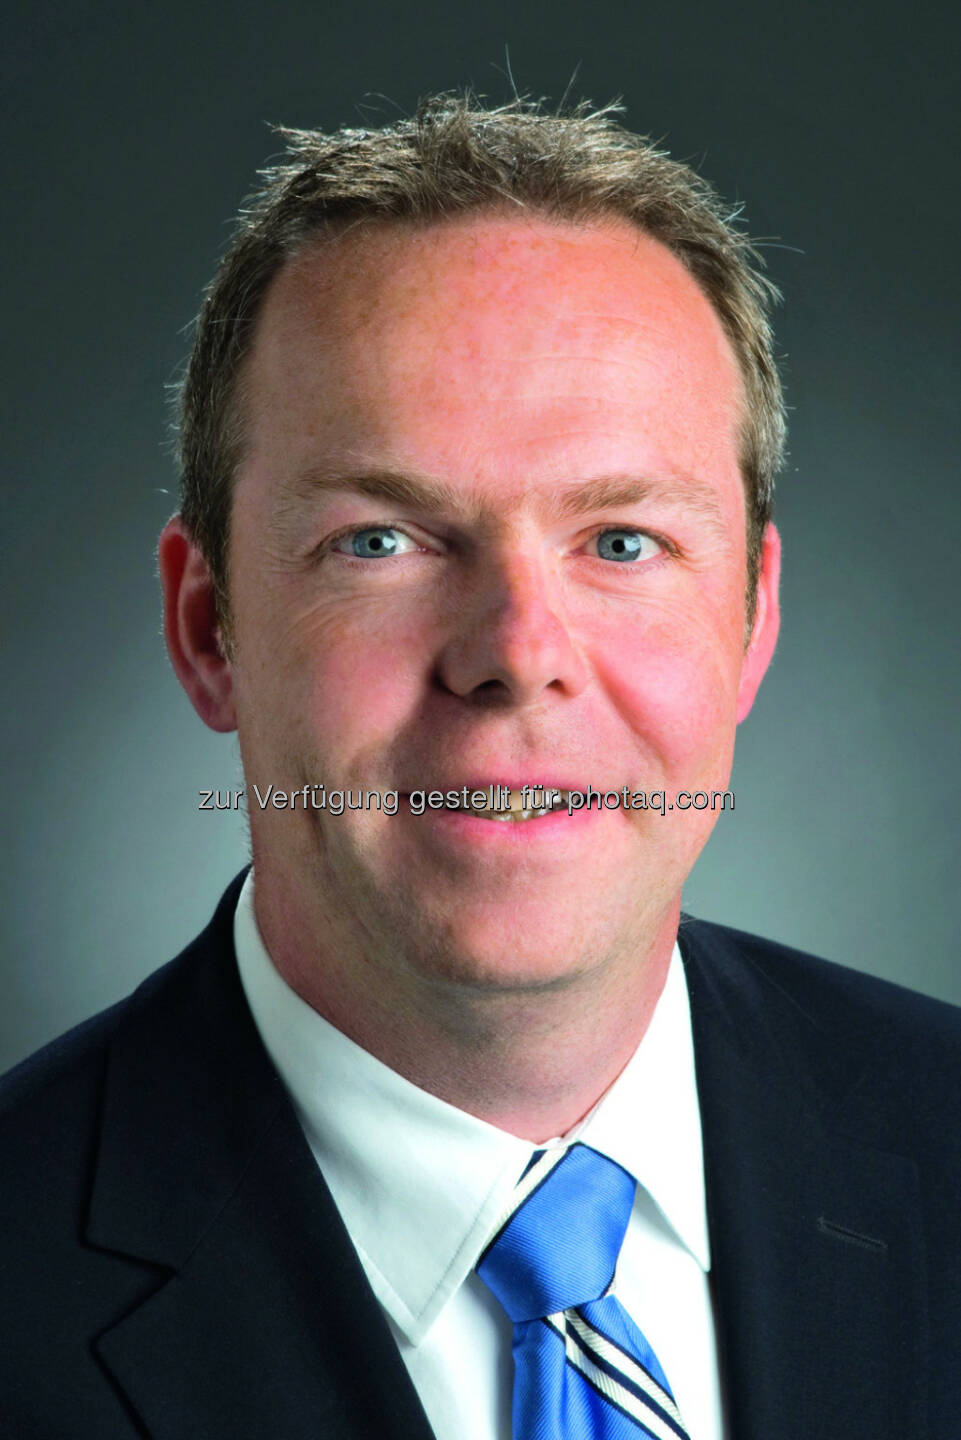 Jan Vanbrabant ist neues Vorstandmitglied der Erber AG: Fotocredit @Erber Group